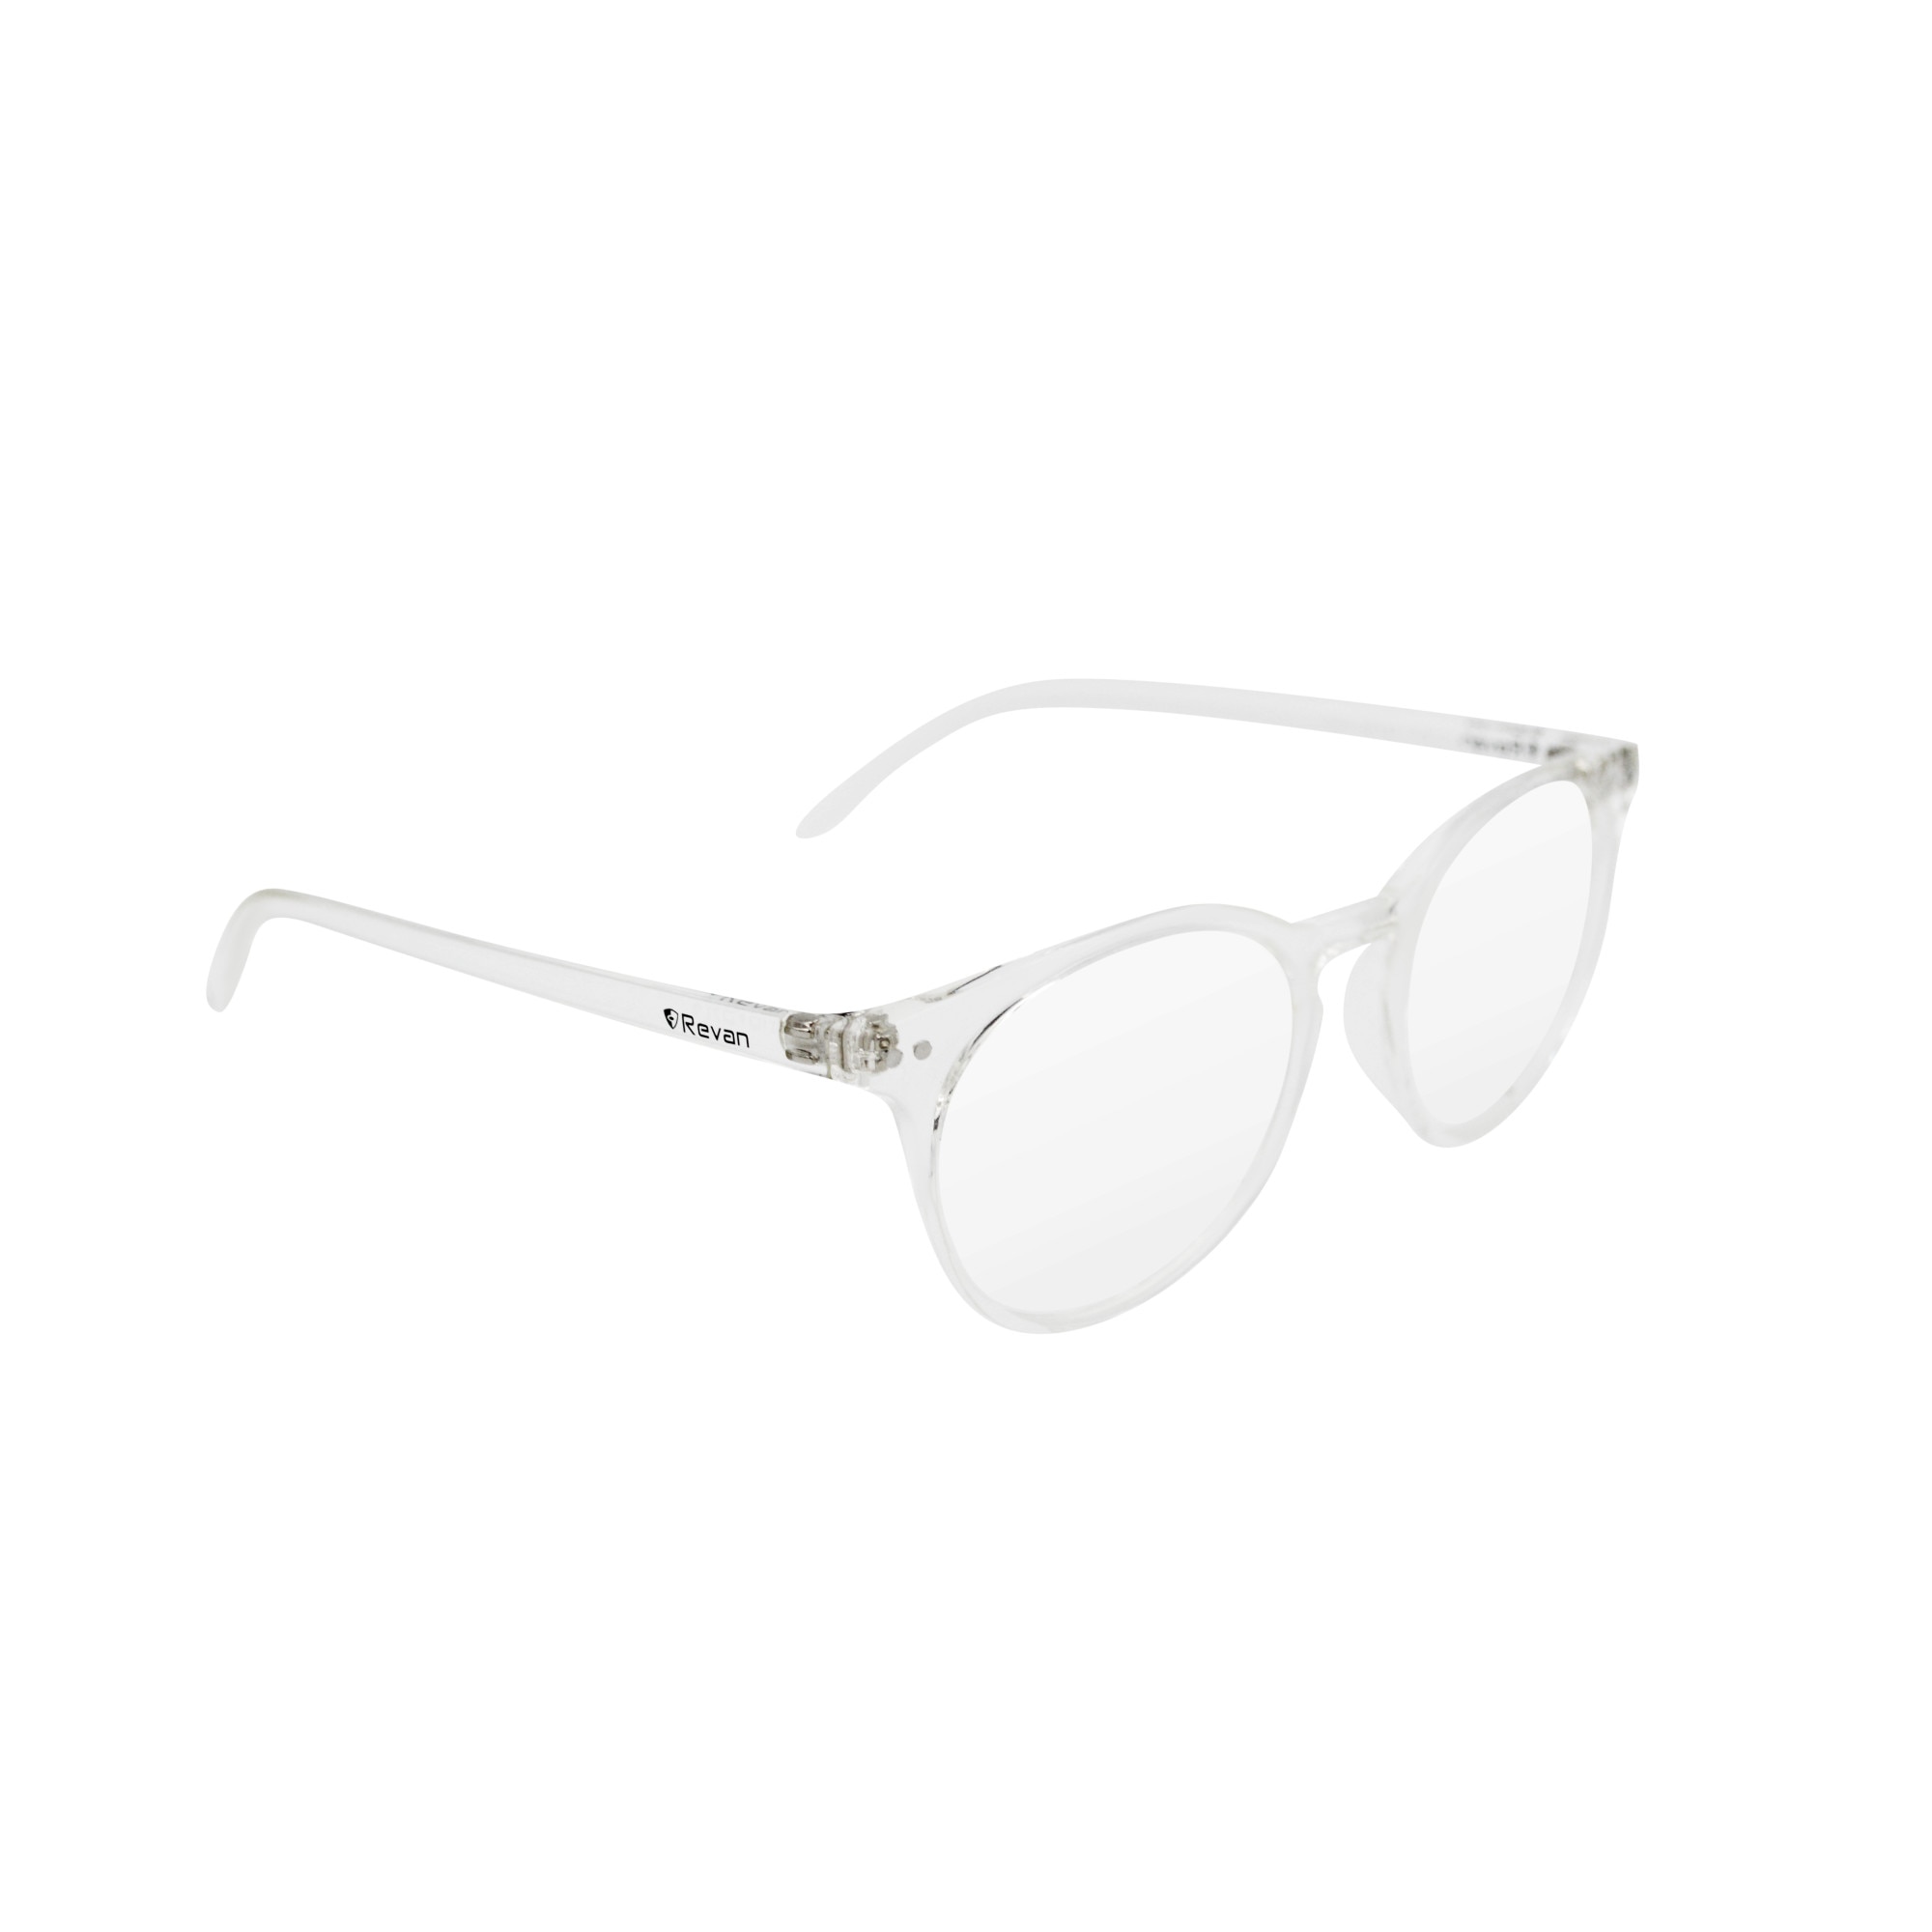 Cumpăraţi ochelari de soare Gucci ieftin online